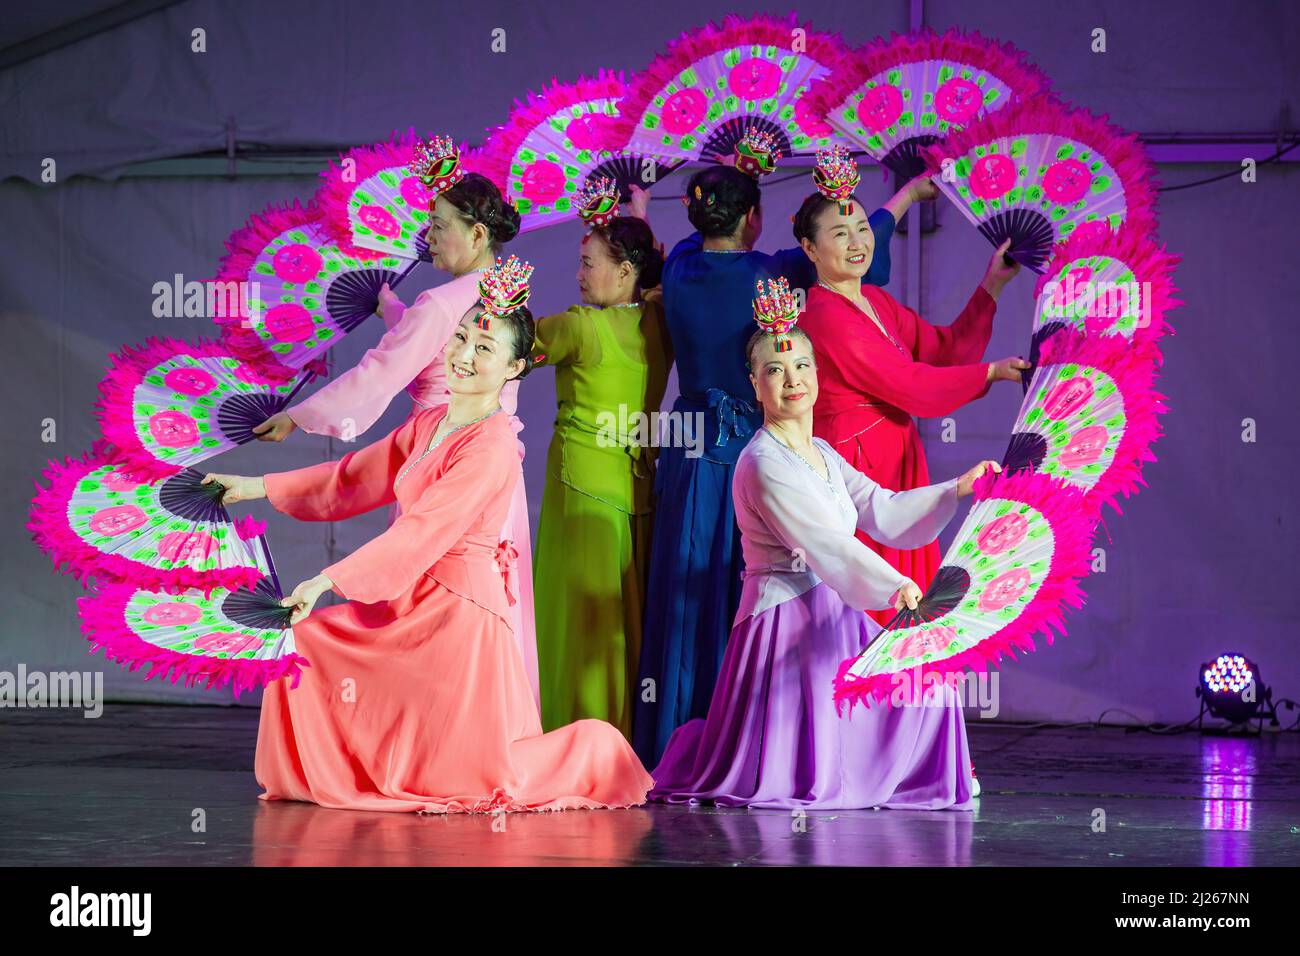 Un groupe de femmes coréennes en robes hanbok exécutant un buchaechum, une danse traditionnelle de fan Banque D'Images